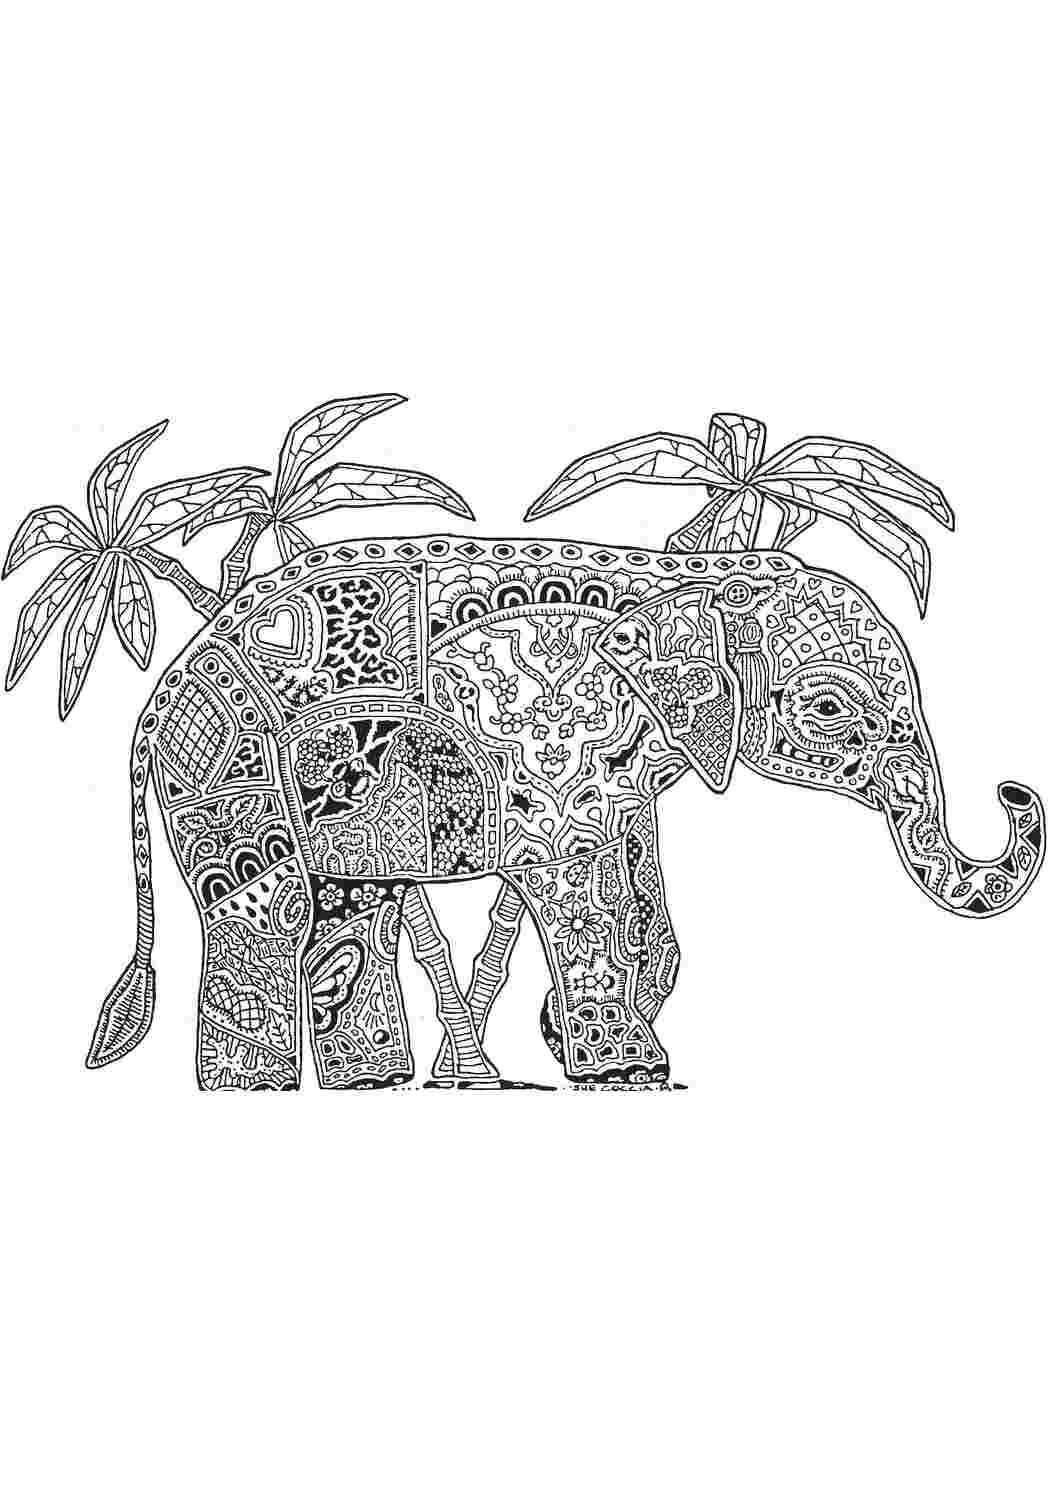 100 000 векторов и графики по запросу Слон девочка рисунок доступны в рамках роялти-фри лицензии